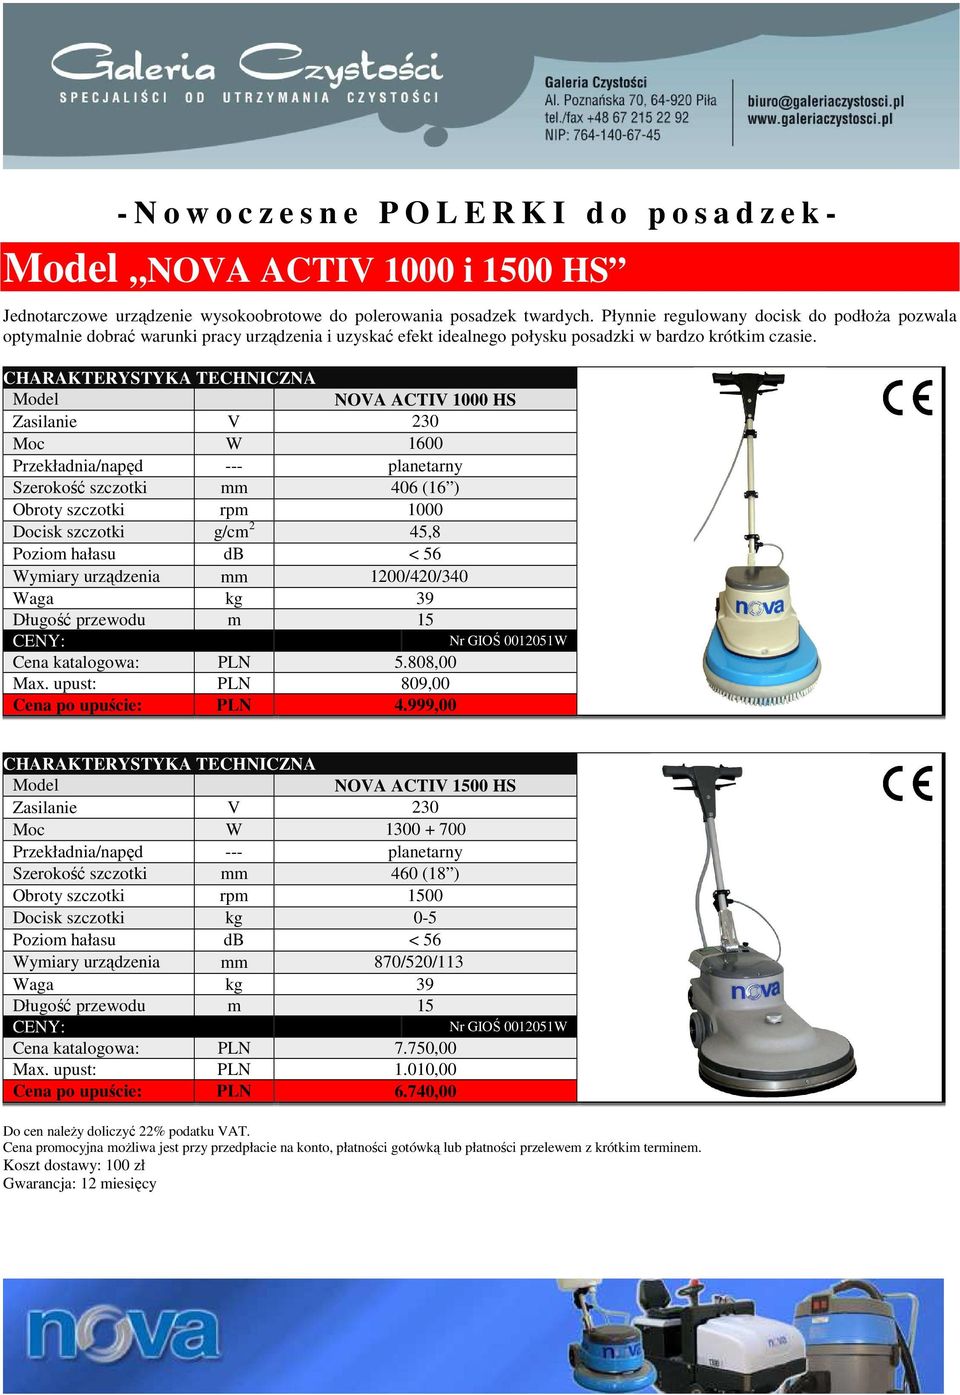 Model NOVA ACTIV 1000 HS Moc W 1600 Szerokość szczotki mm 406 (16 ) Obroty szczotki rpm 1000 Docisk szczotki g/cm 2 45,8 Poziom hałasu db < 56 Wymiary urządzenia mm 1200/420/340 Waga kg 39 Cena